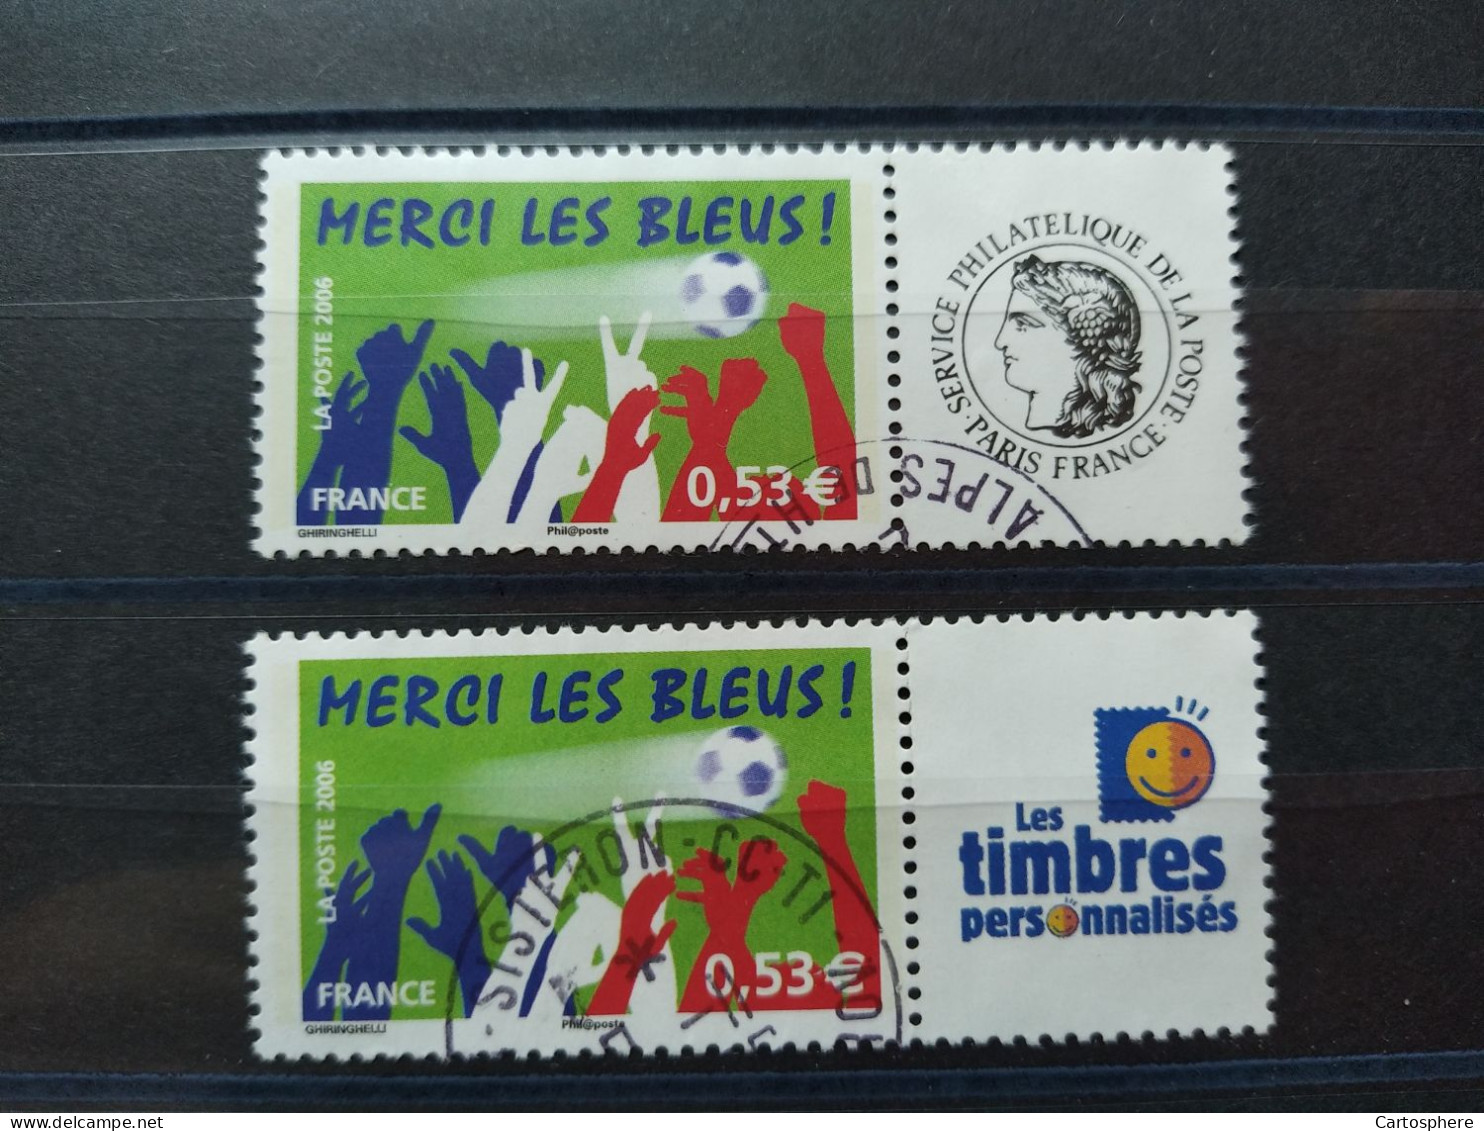 Timbre Personnalisé ** - Merci Les Bleus - Vignette Personnalisée - 2006 - Y & T N° 3936A O OBLITERE - Used Stamps